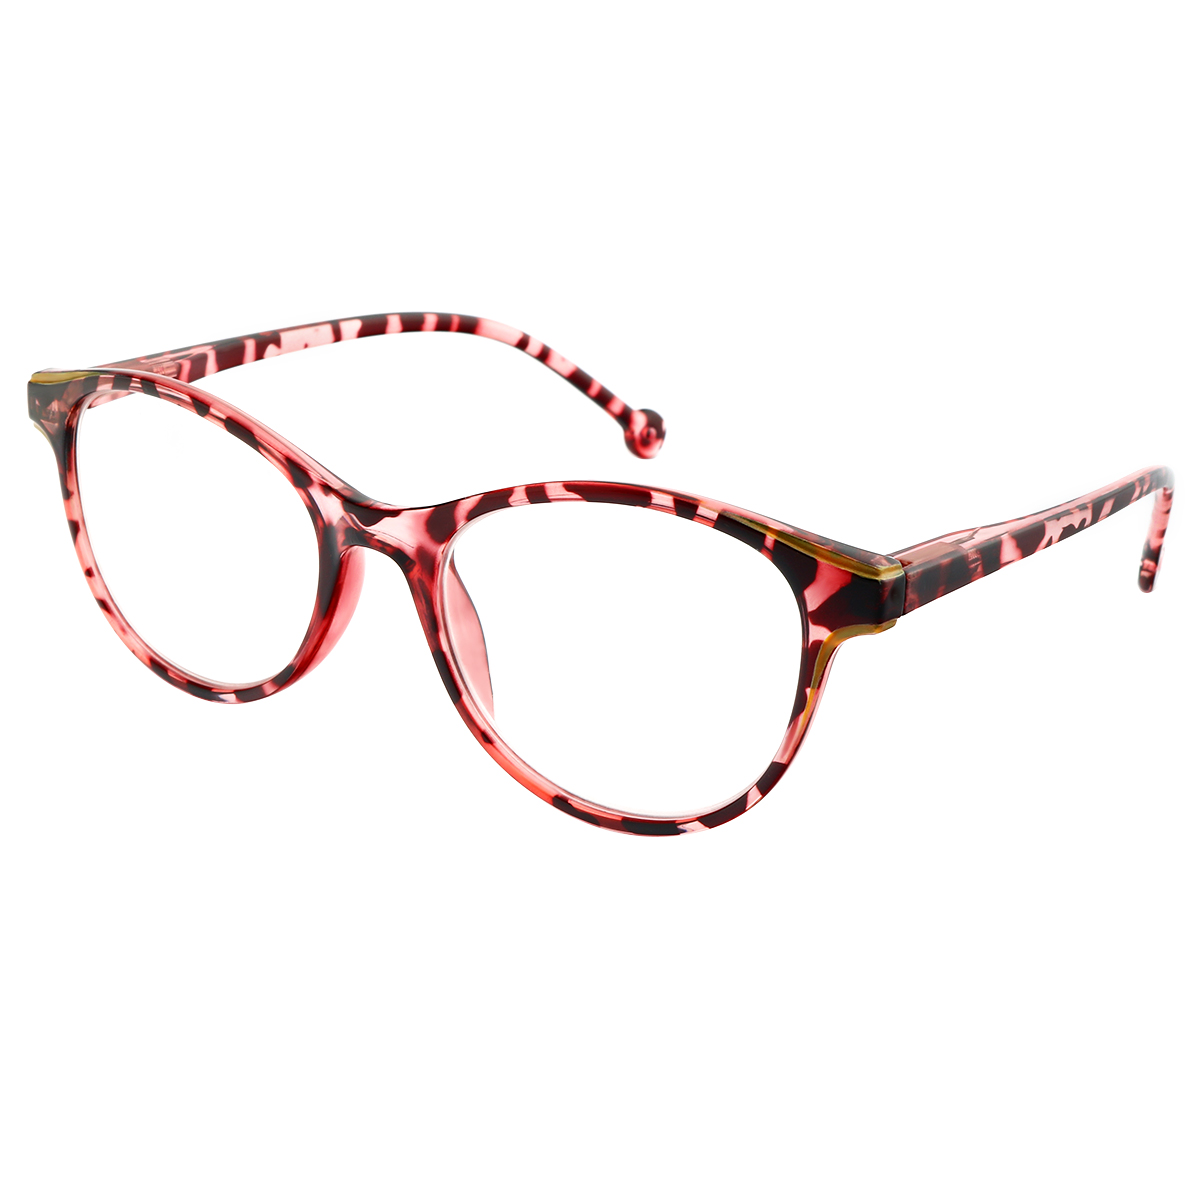 Lesley - Cat-eye Red Reading Glasses for Women